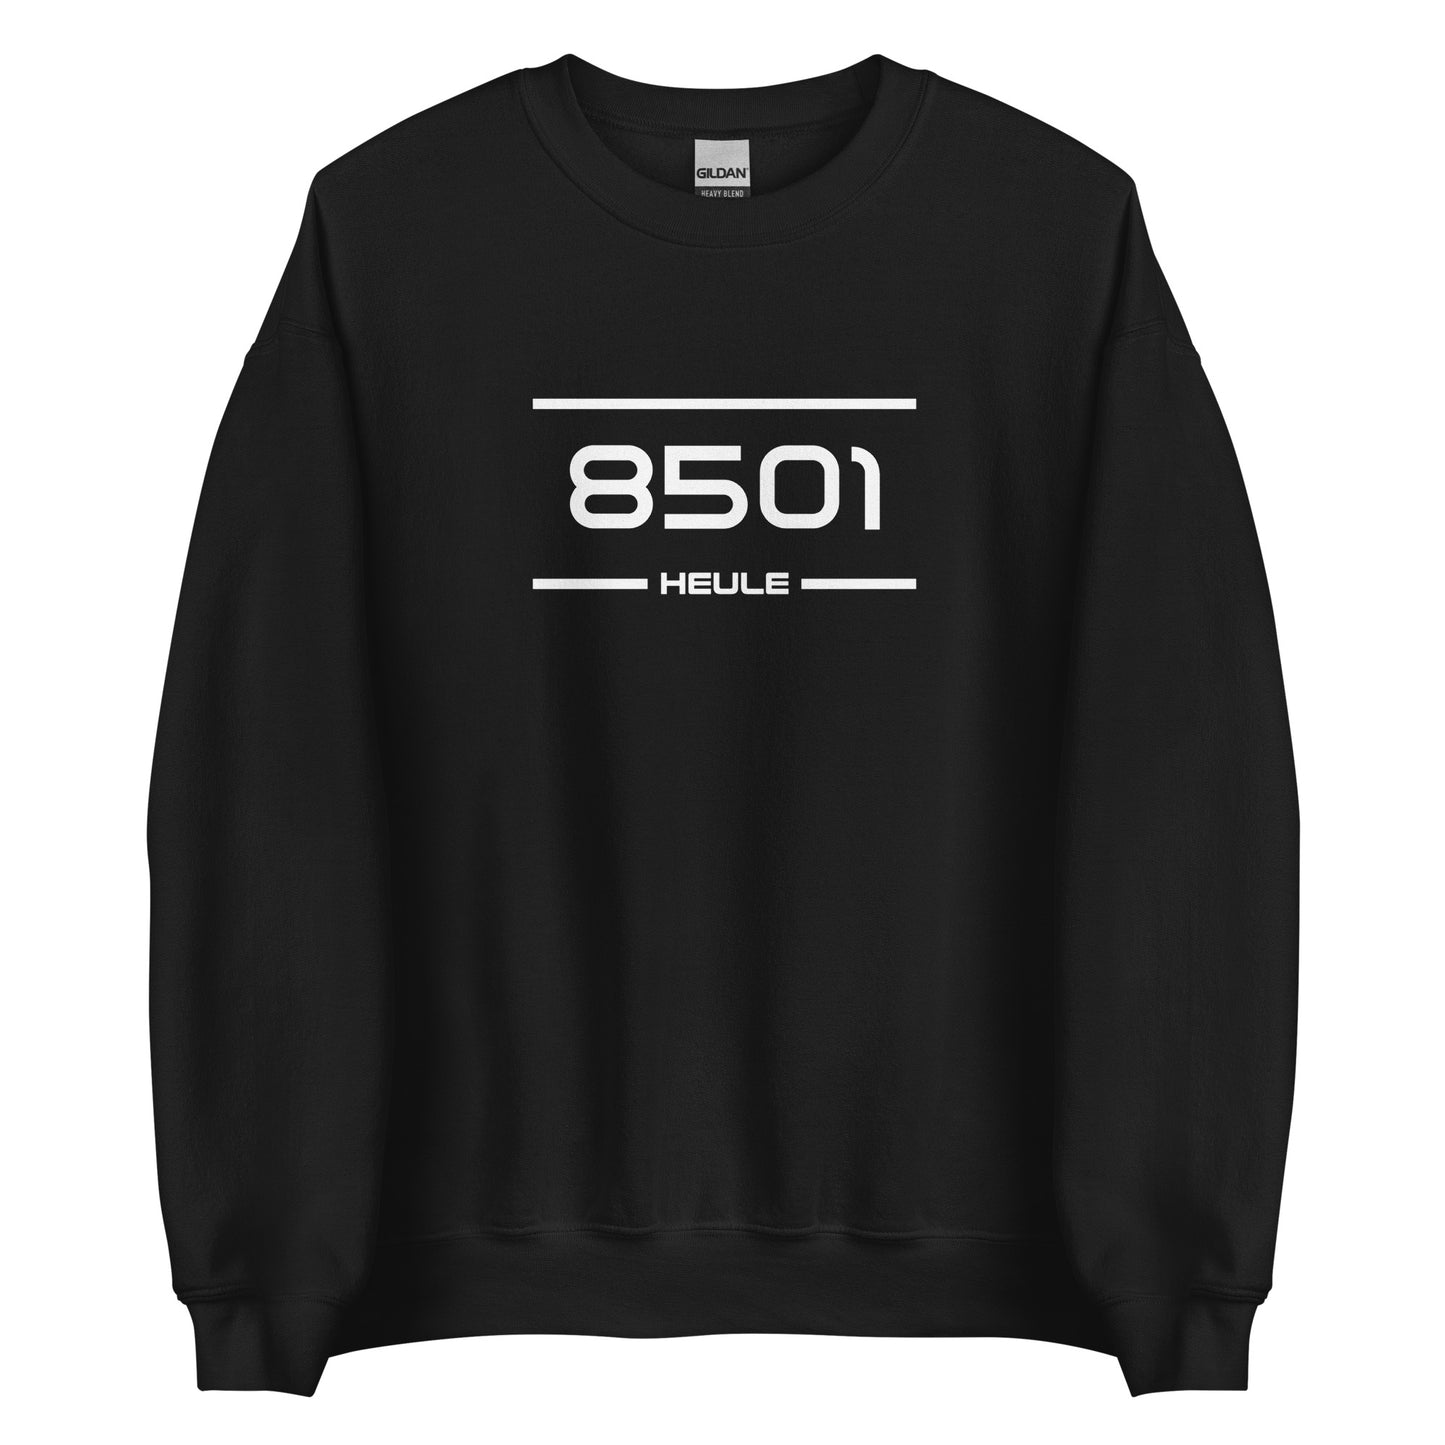 Sweater - 8501 - Heule (M/V)